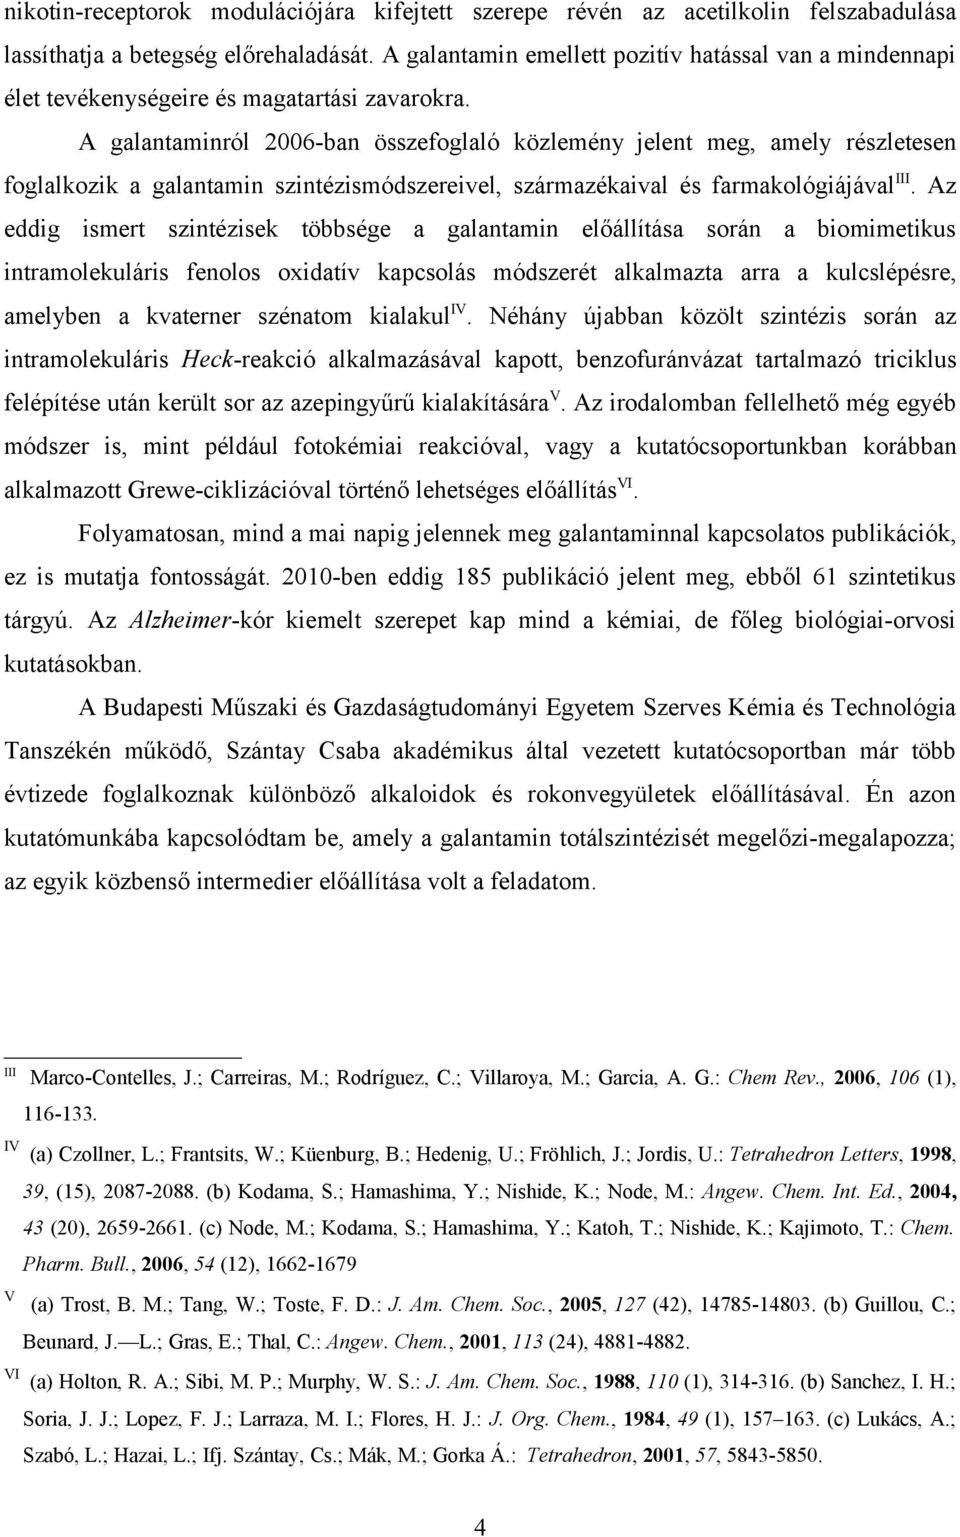 A galantaminról 2006-ban összefoglaló közlemény jelent meg, amely részletesen foglalkozik a galantamin szintézismódszereivel, származékaival és farmakológiájával III.